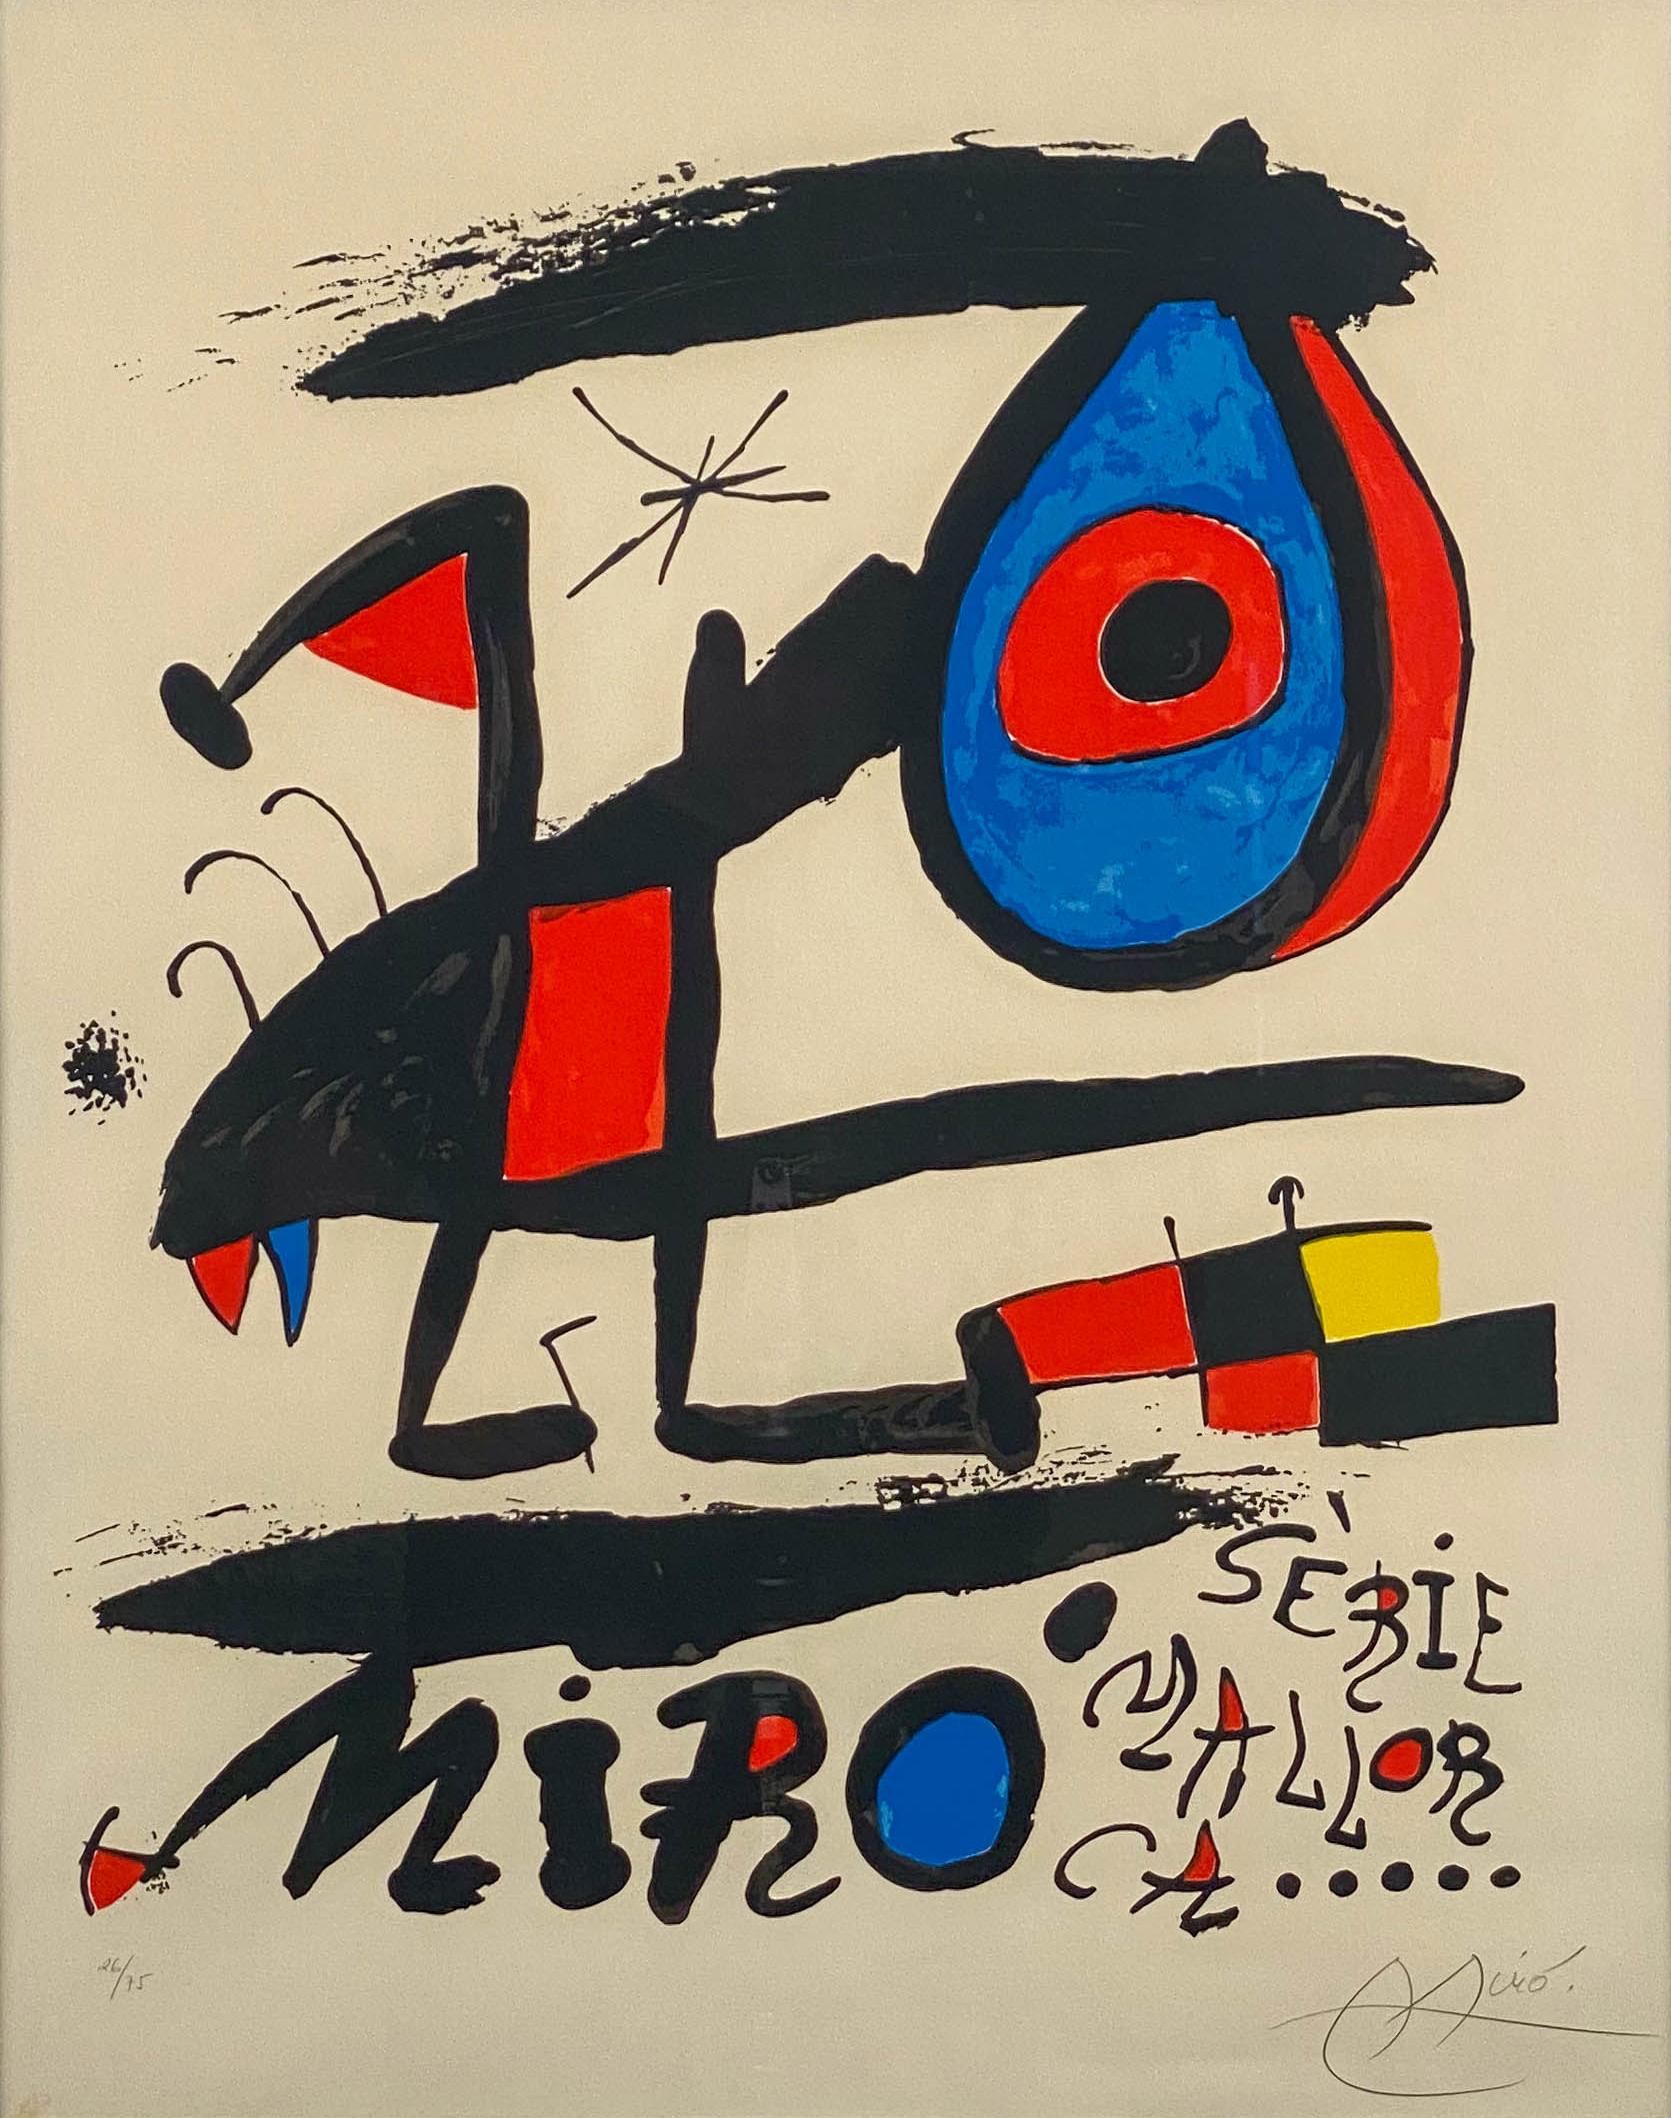 Affiche de l'exposition Serie Mallorca - Abstrait Mixed Media Art par Joan Miró